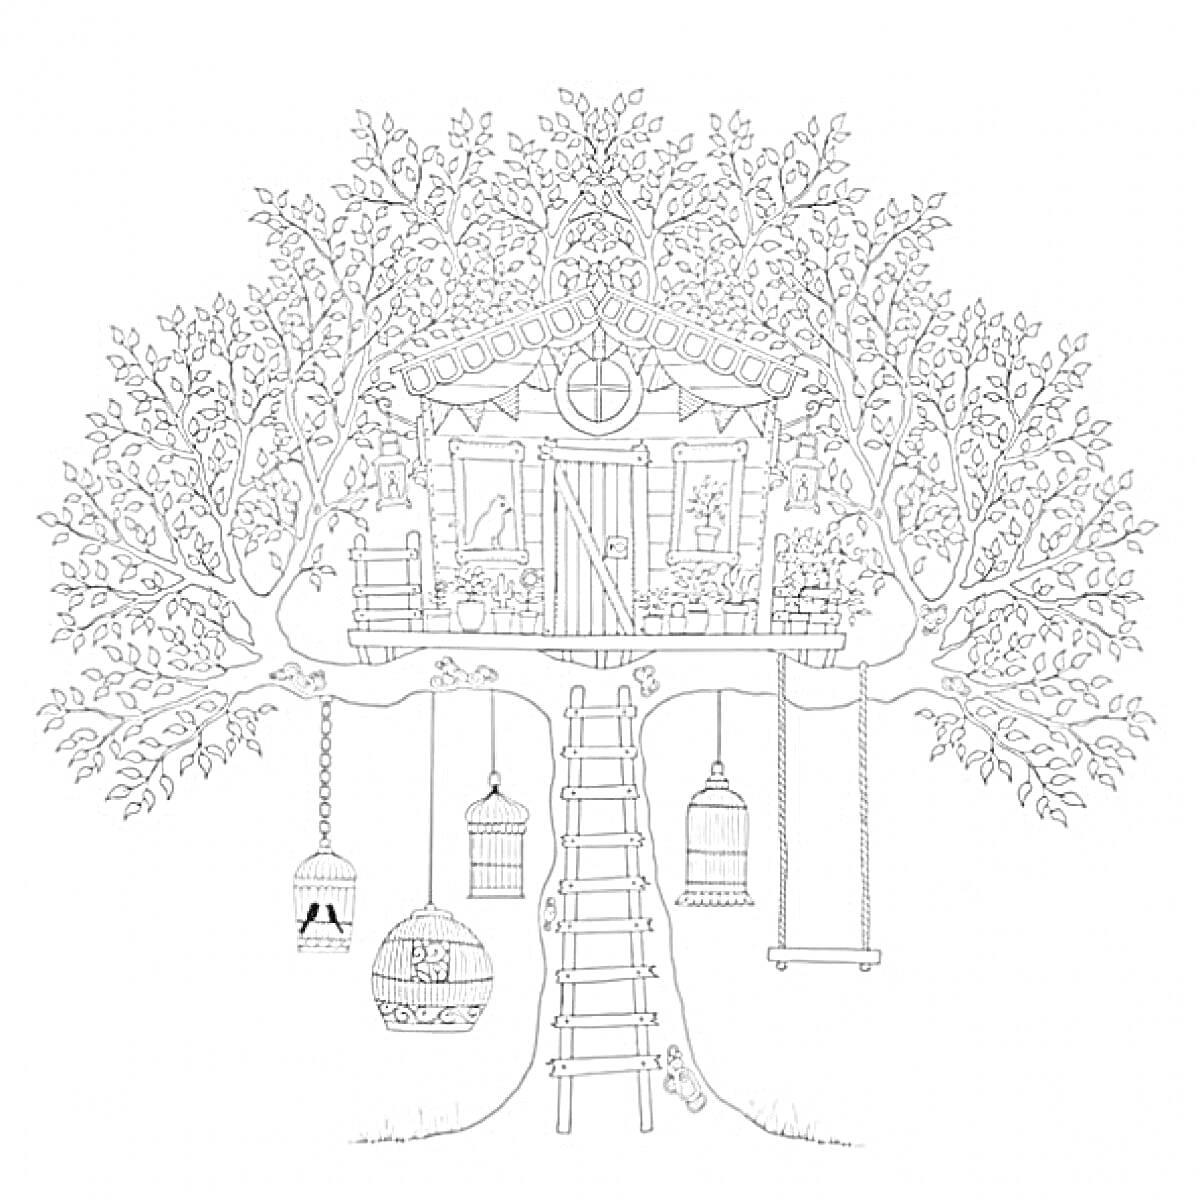 Домик на дереве с лестницей, качелями и подвешенными клетками для птиц